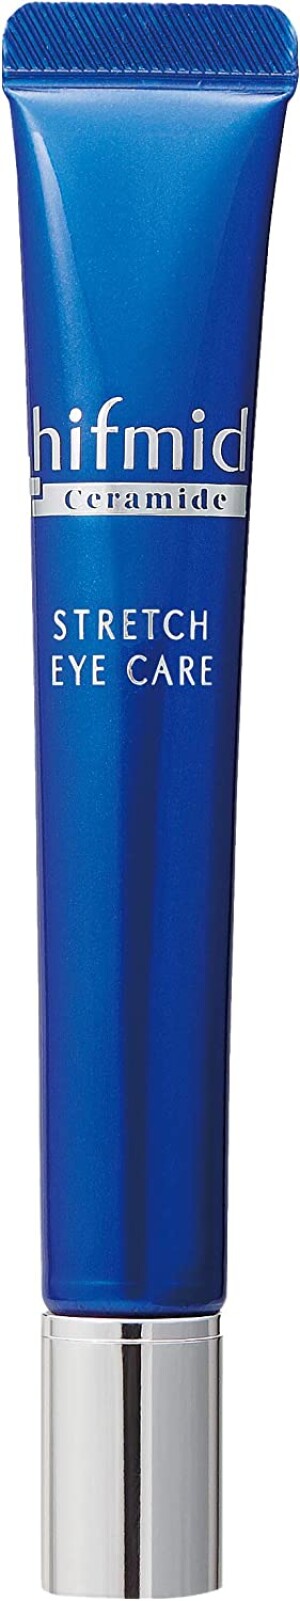 Антивозрастной крем с церамидами для кожи вокруг глаз Kobayashi Hifmid Stretch Eye Care